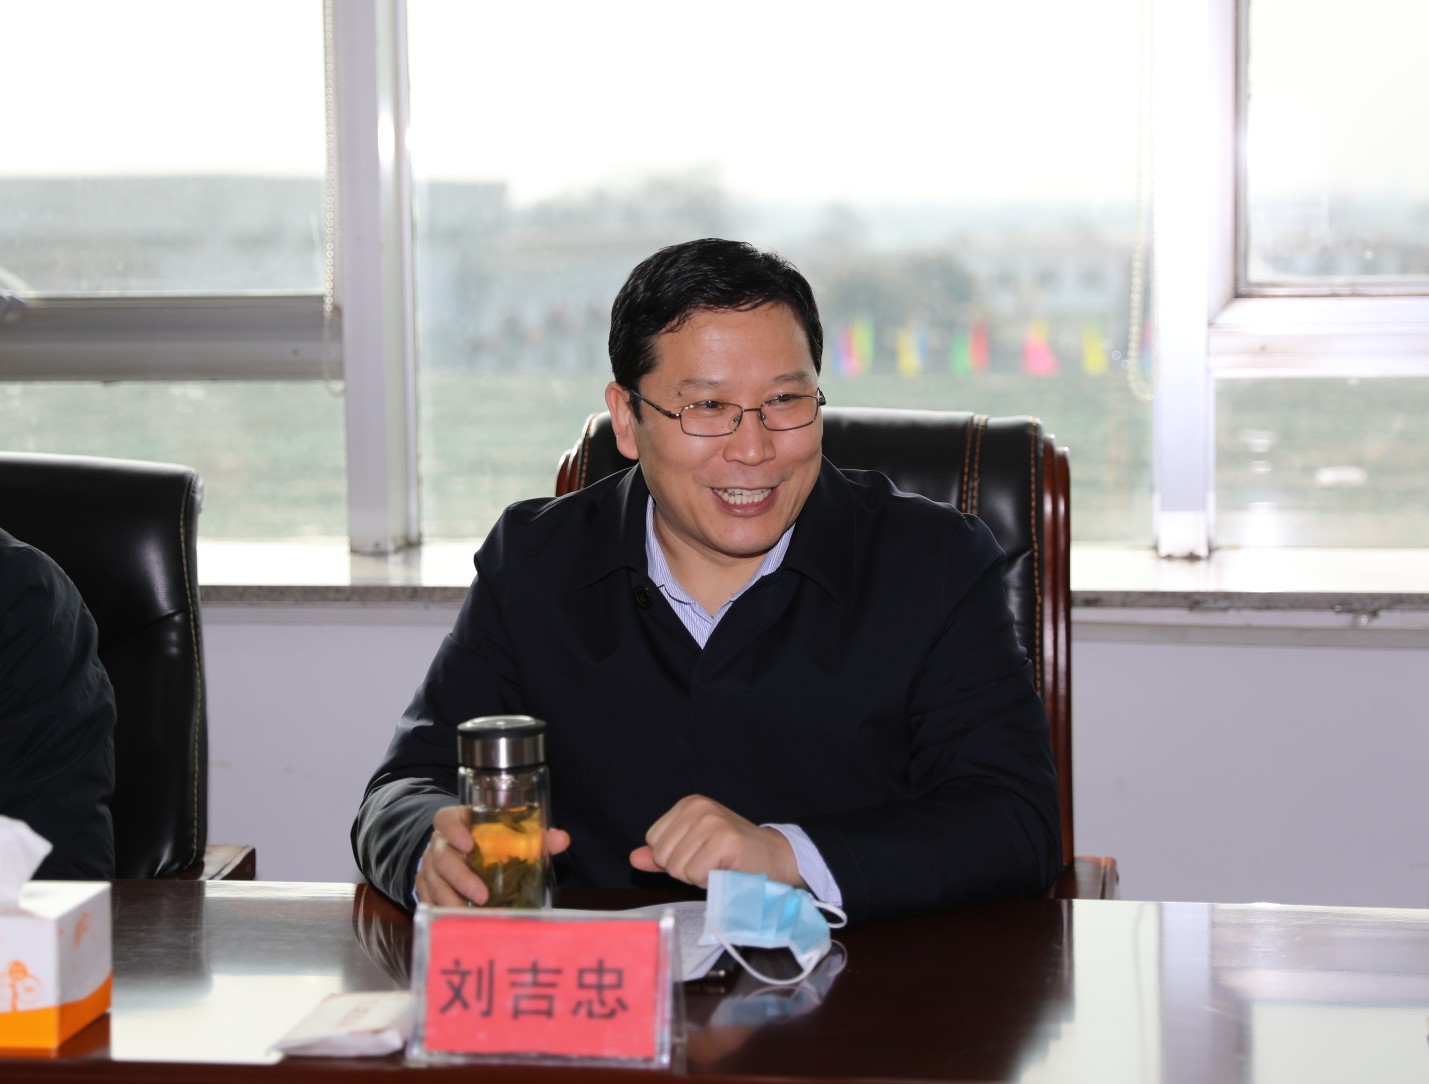 枣庄市副市长刘吉忠到枣庄监狱督导检查疫情防控工作